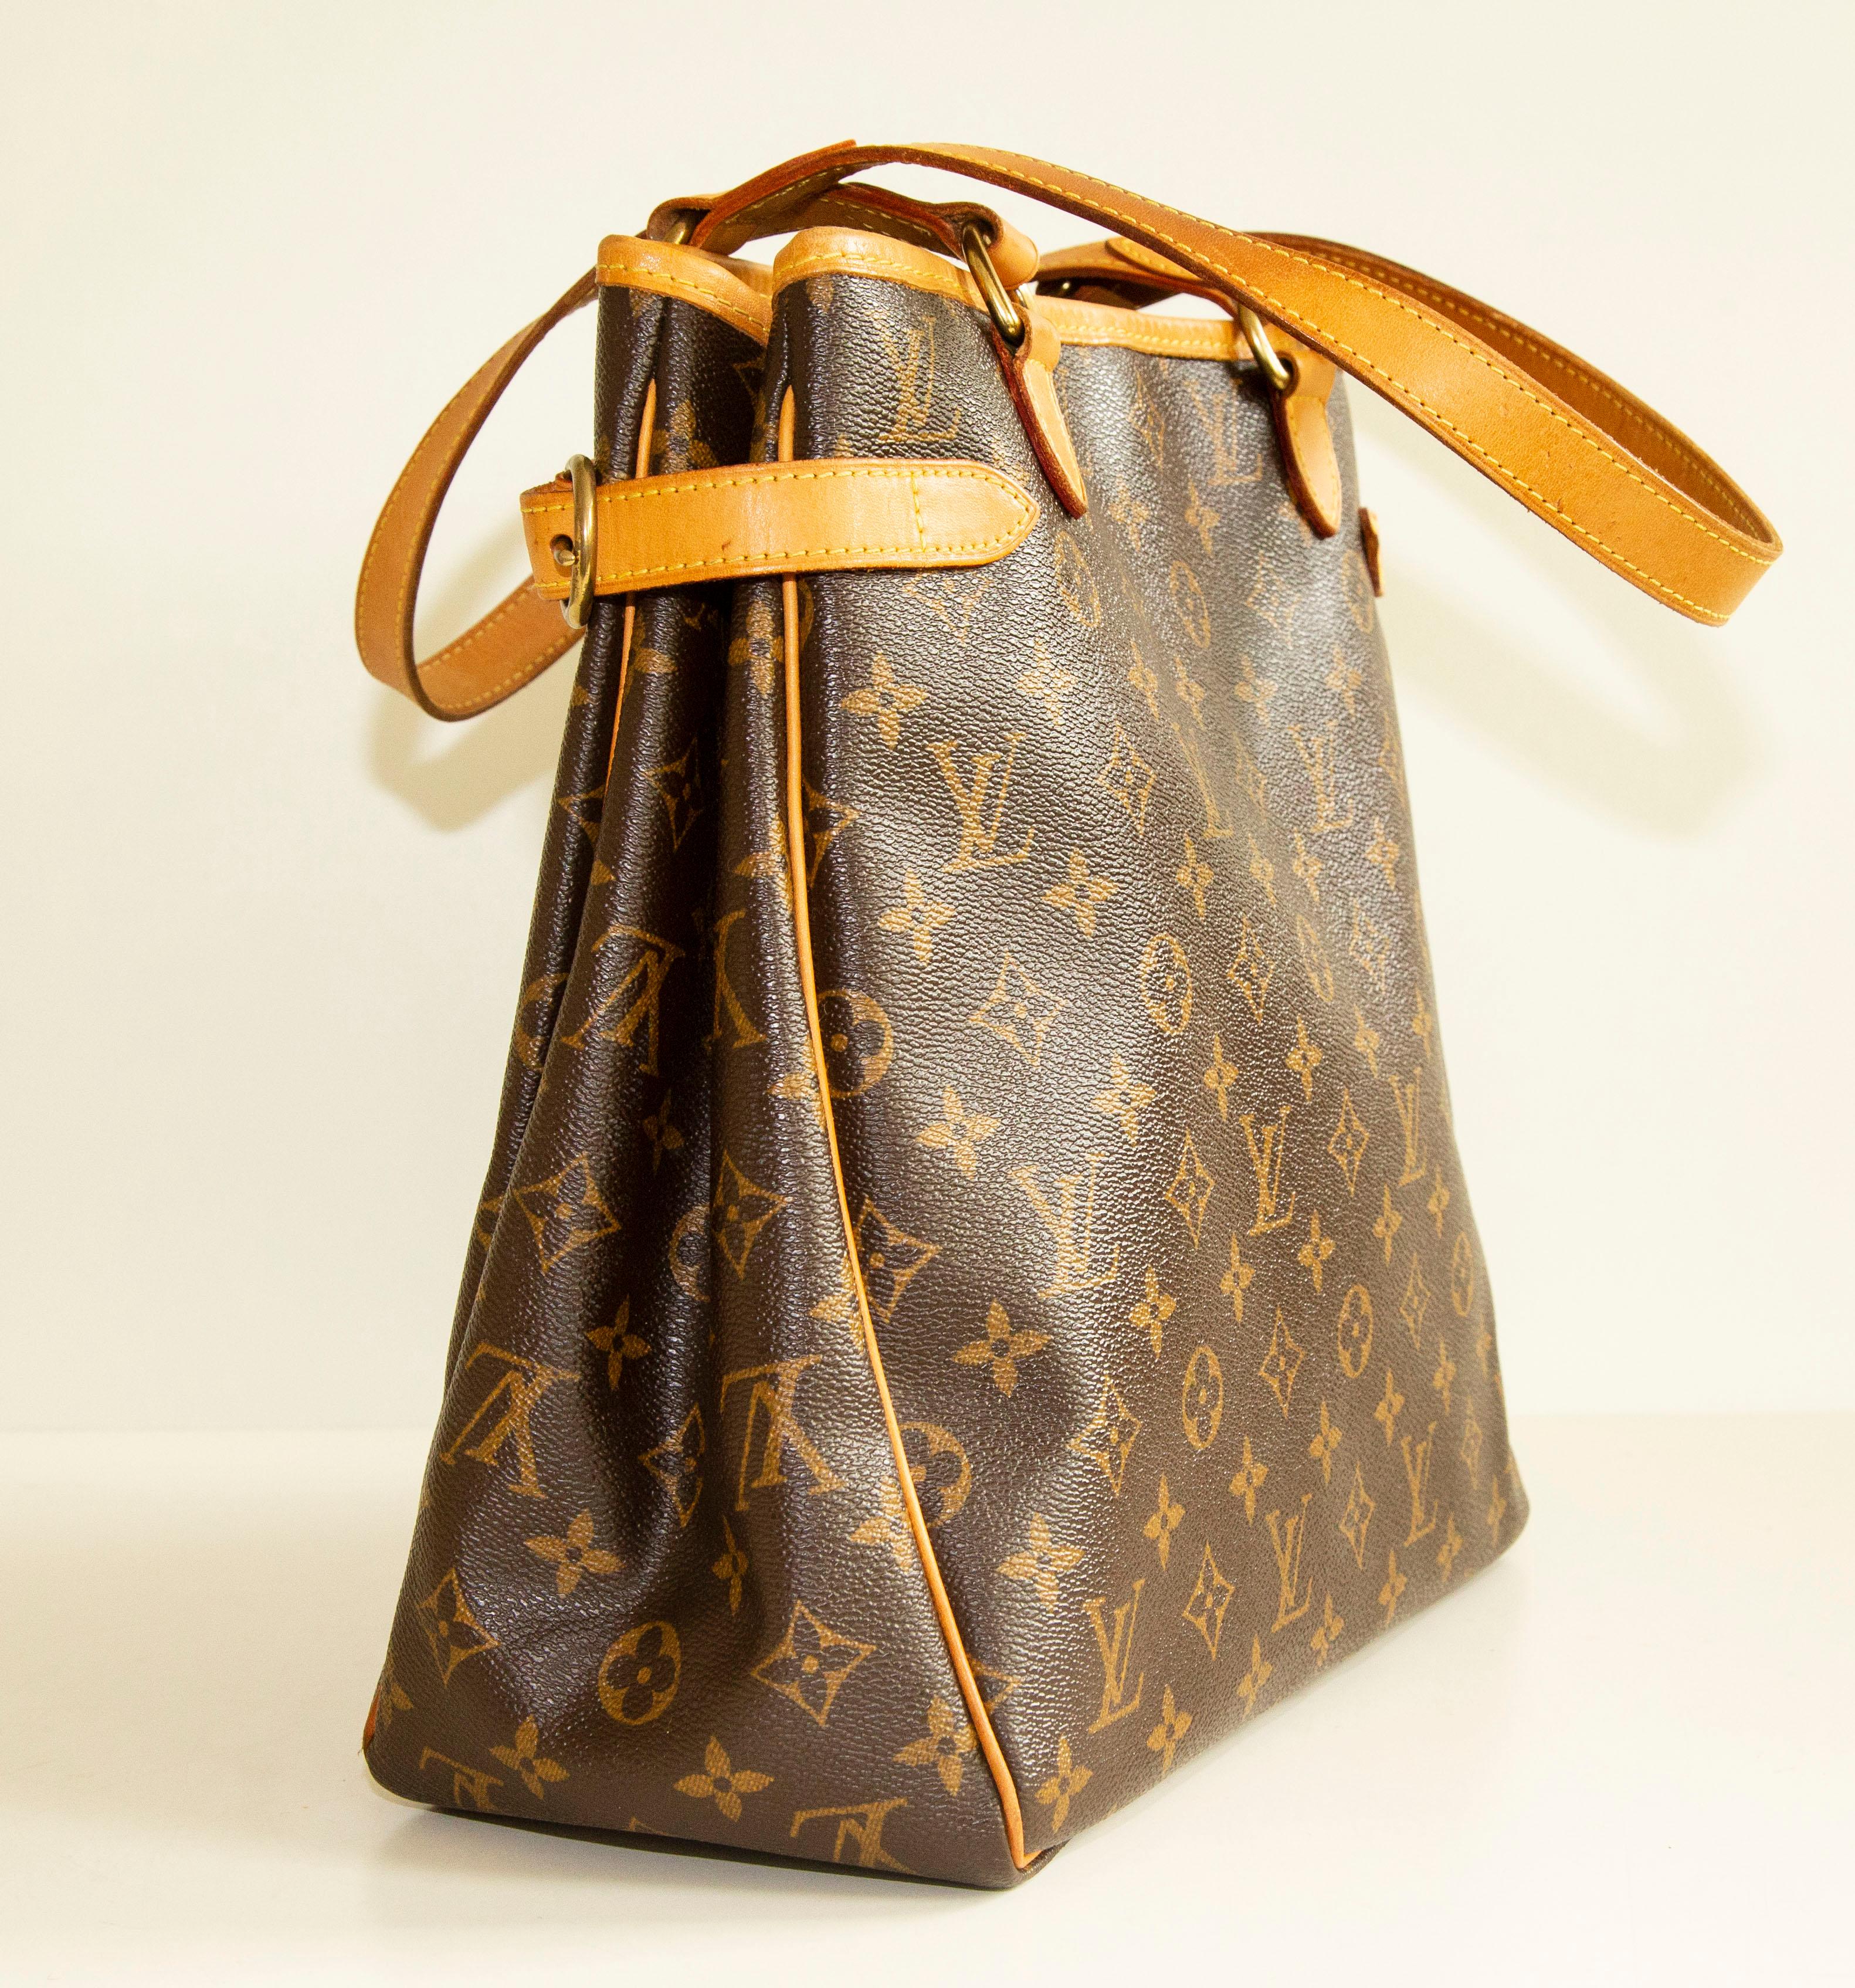 Eine authentische Louis Vuitton Batignolles vertikale Umhängetasche. Die Tasche ist mit einem LV Monogram Canvas, Vachetta-Leder und goldfarbenen Beschlägen ausgestattet. Das Innere ist mit braunem Stoff ausgekleidet und verfügt über zwei